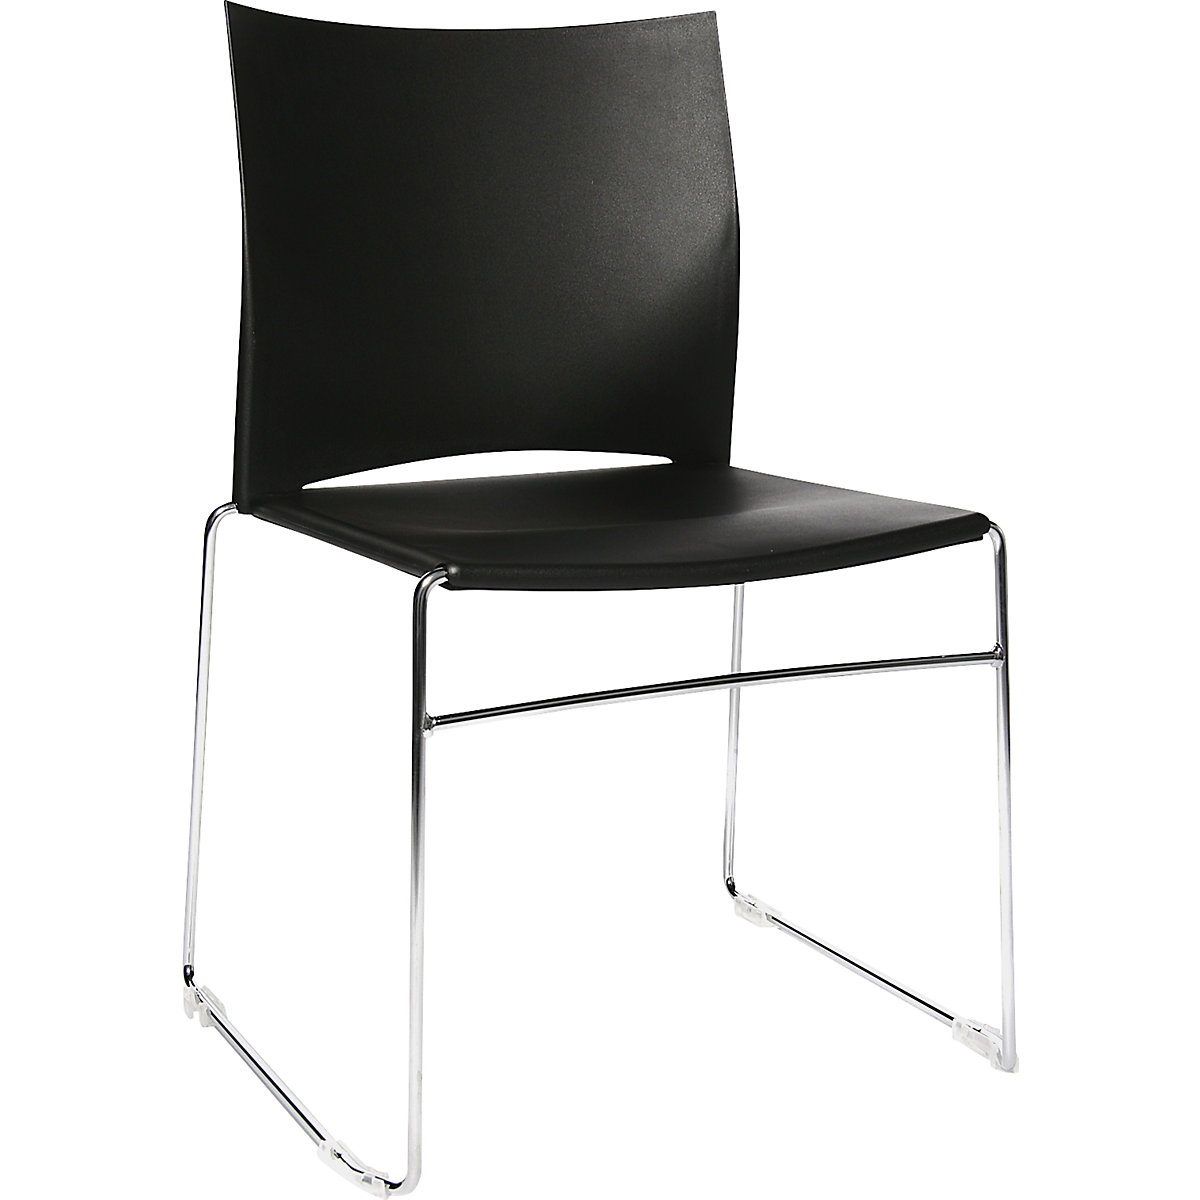 Cadeira empilhável com pernas tipo patim – Topstar, armação cromada, embalagem de 4 unid., preto-7